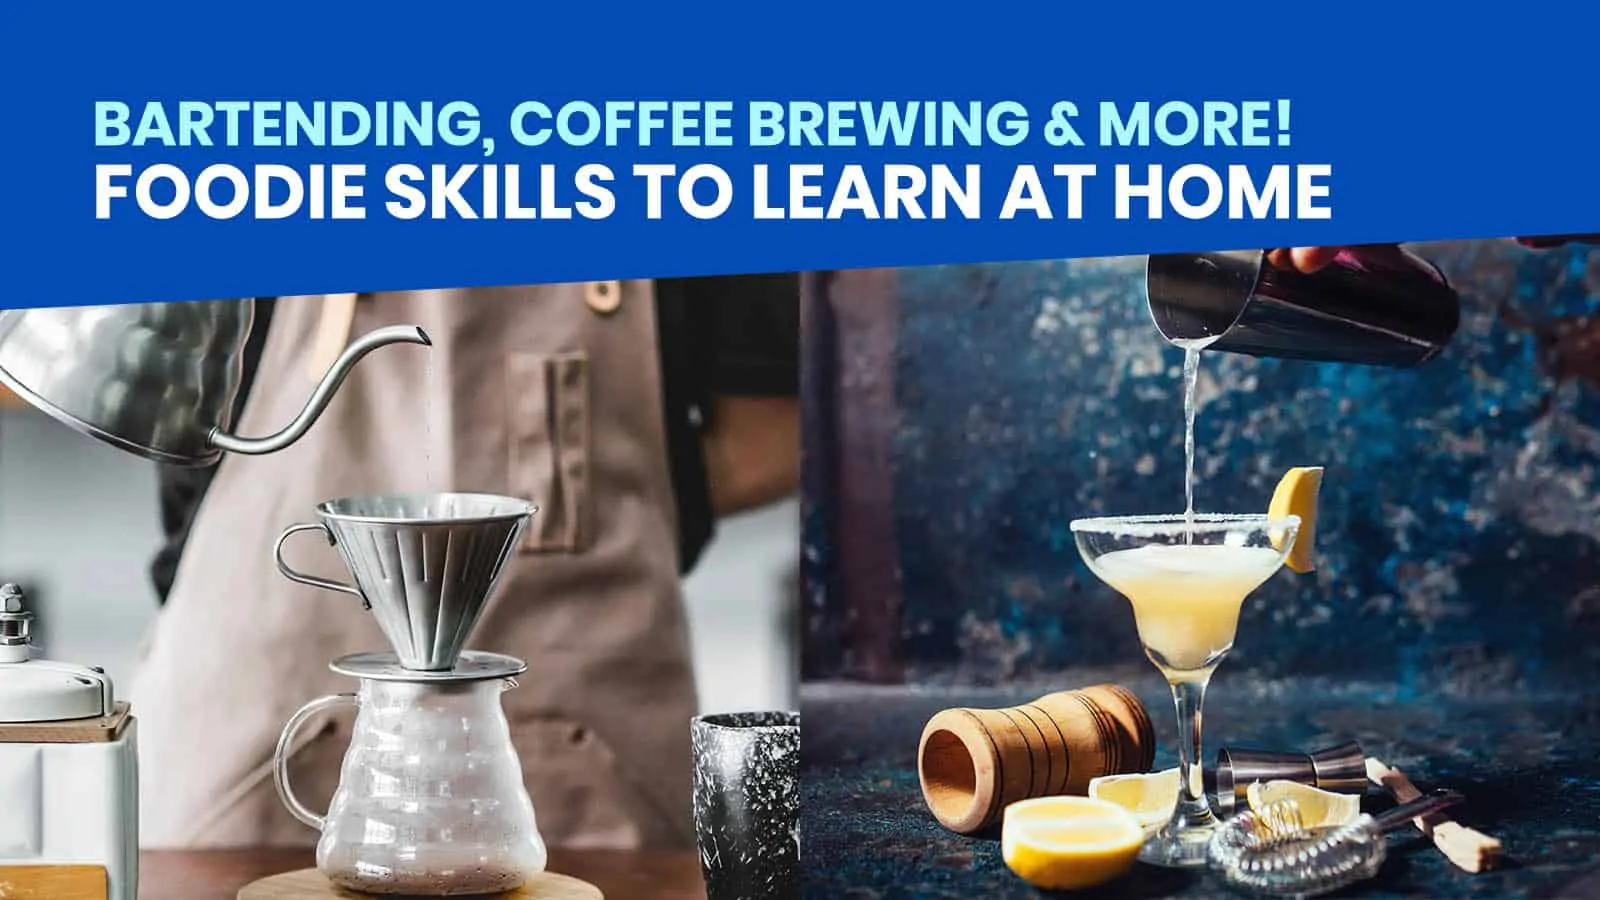 你可以在家学习的8种吃货技能:调酒、咖啡冲泡、意大利面制作等!